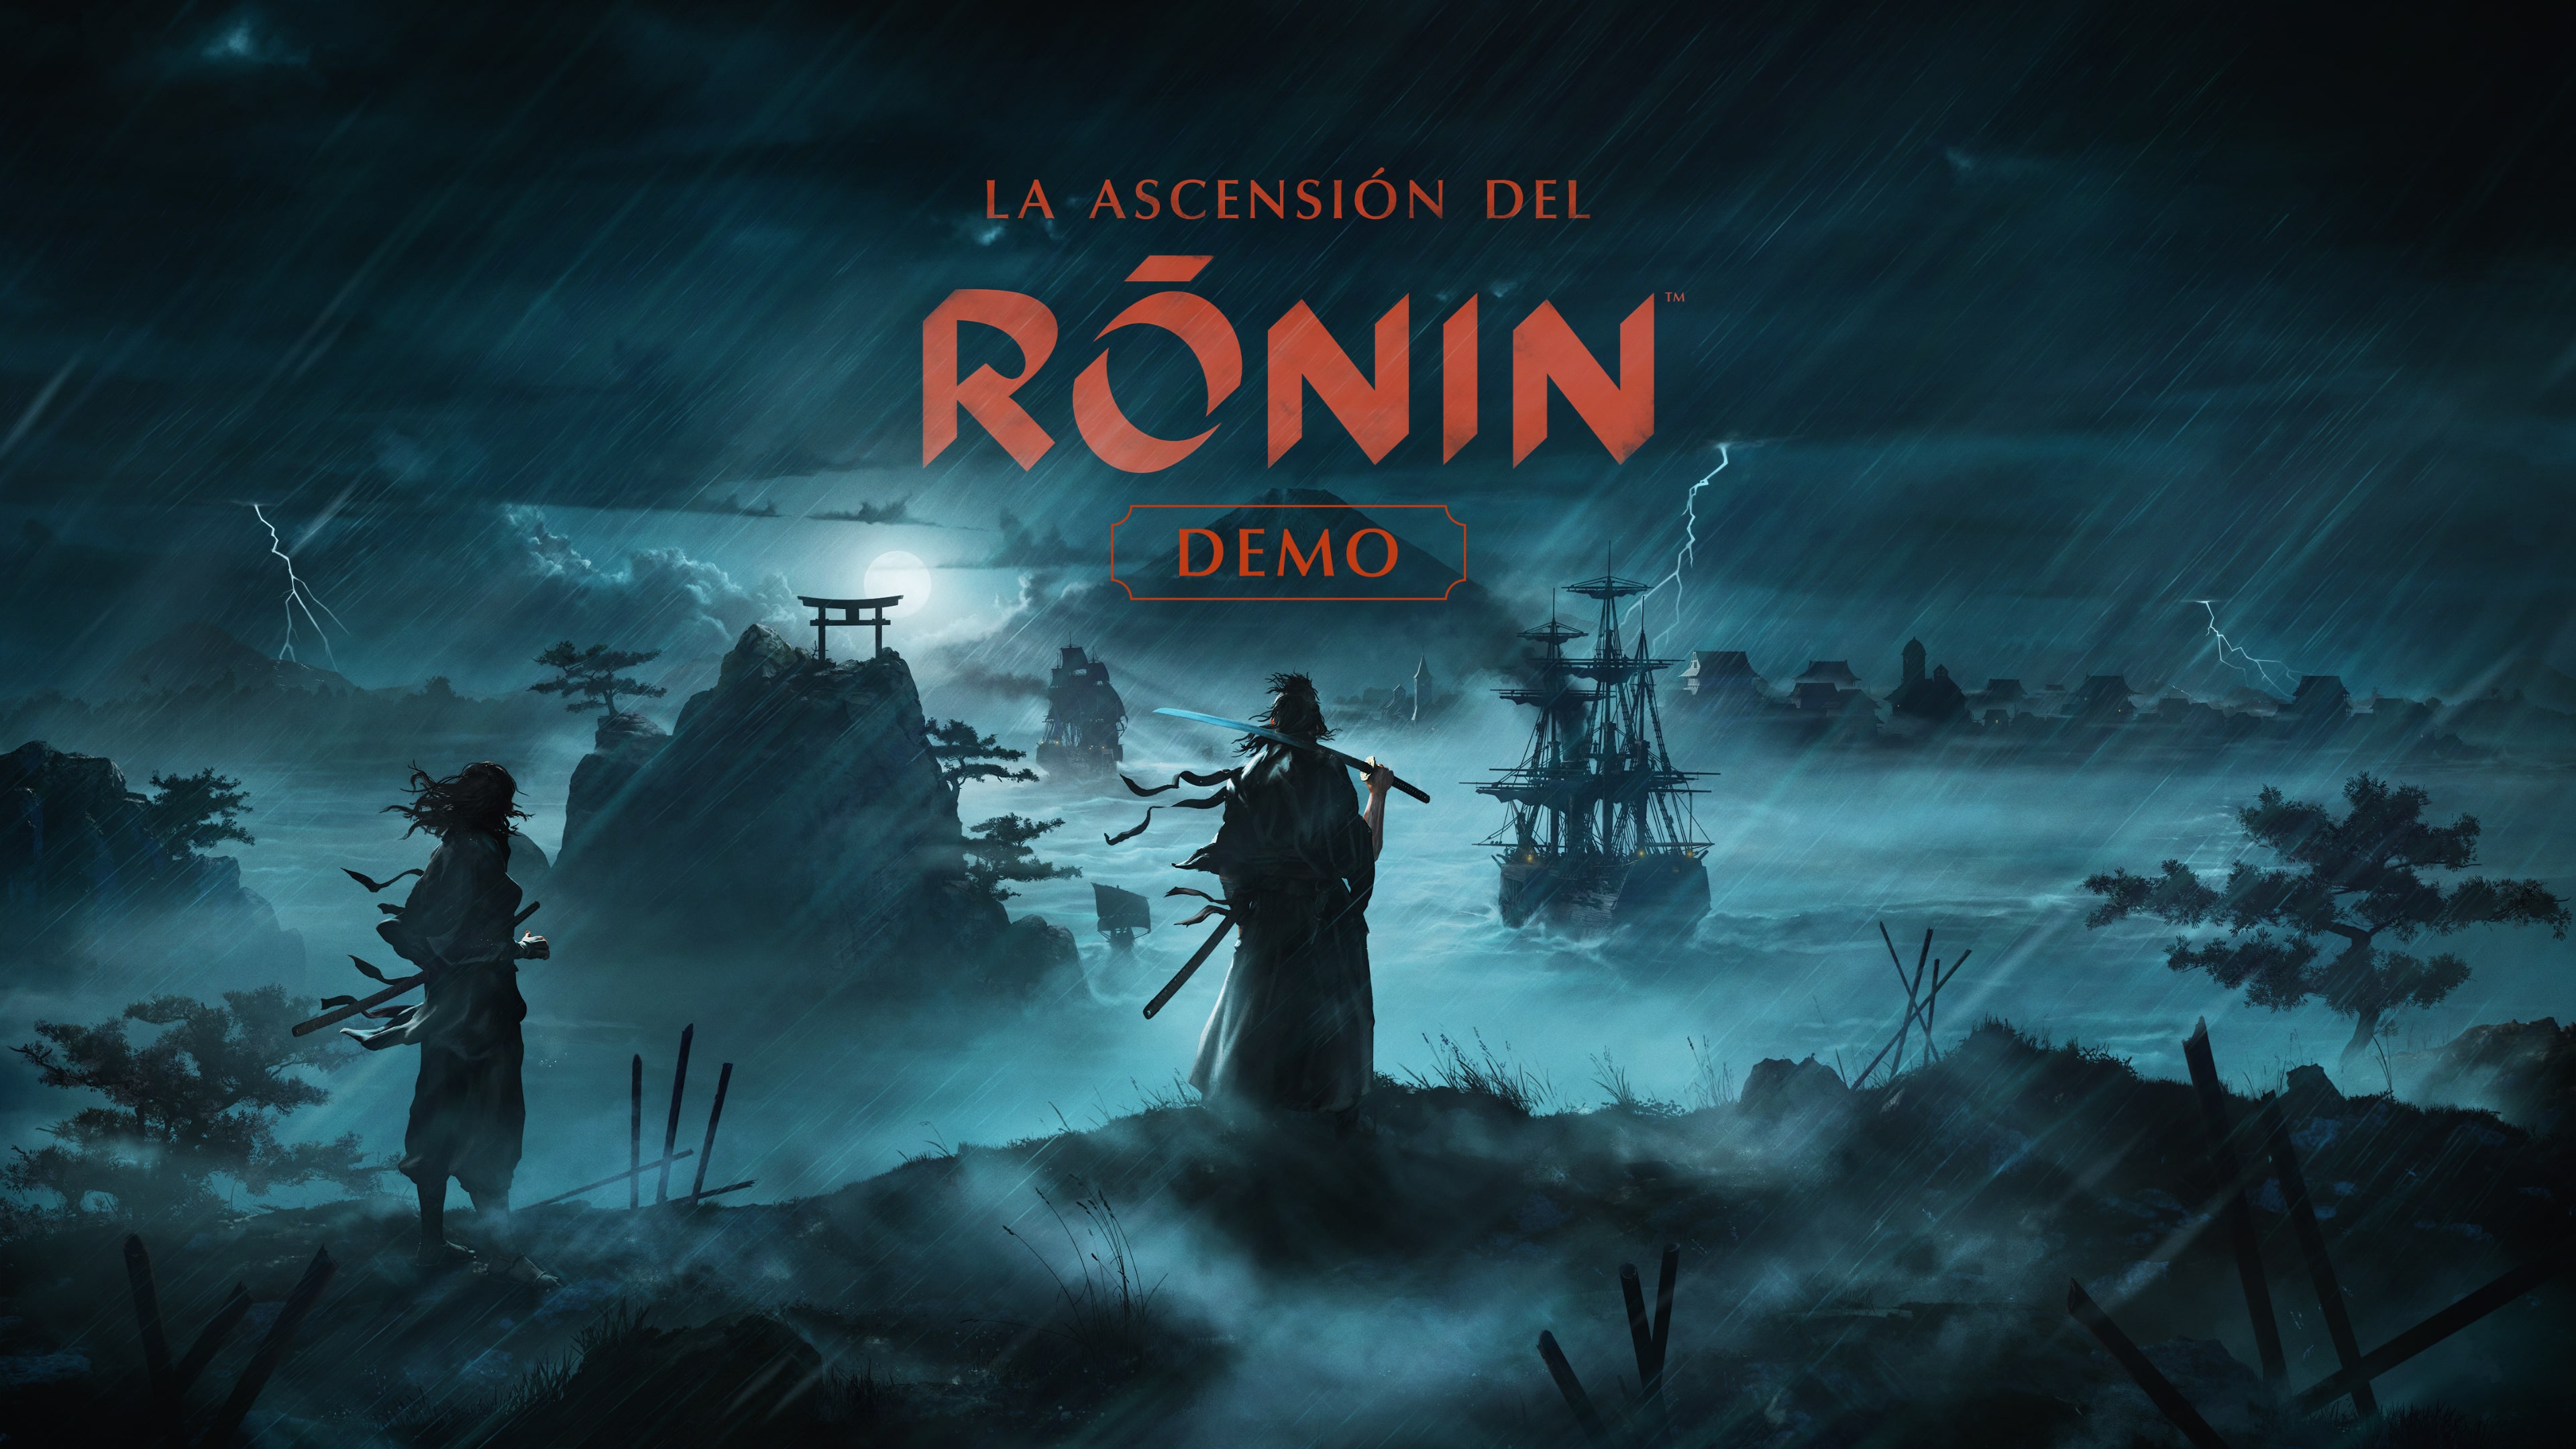 Demo de La ascensión del Ronin™